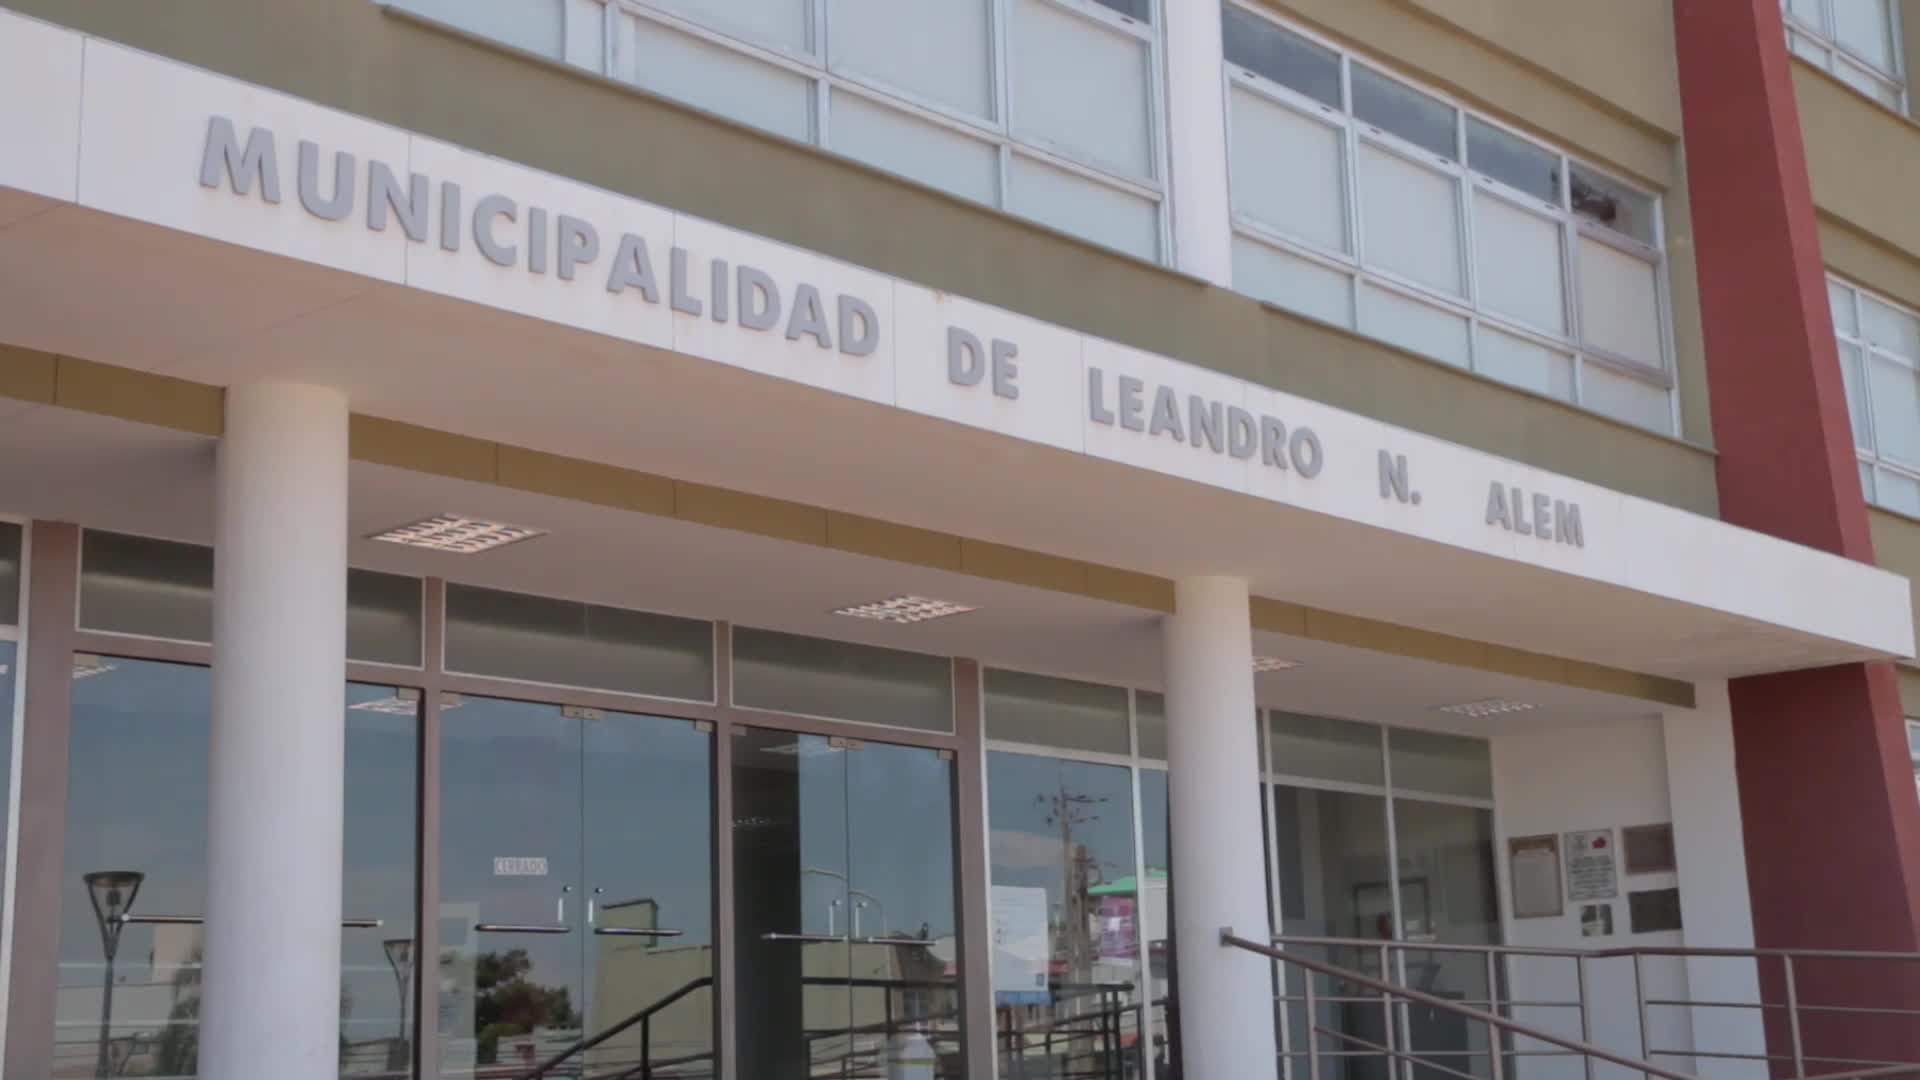 Se esperan obras importantes en 2019 Leandro N. Alem, un municipio en constante crecimiento